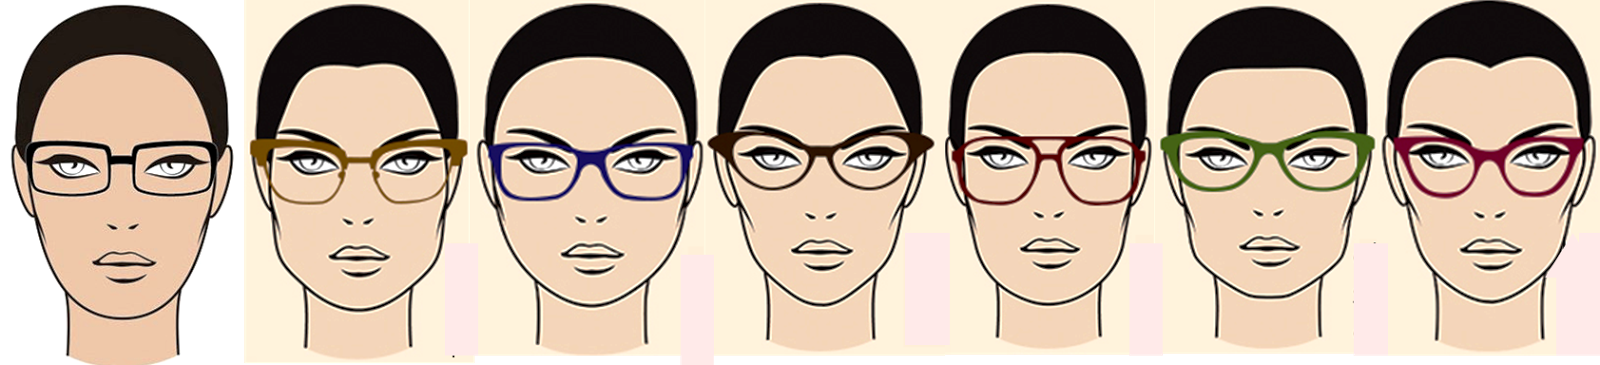 Resultado de imagen de gafas adecuadas para cada rostro